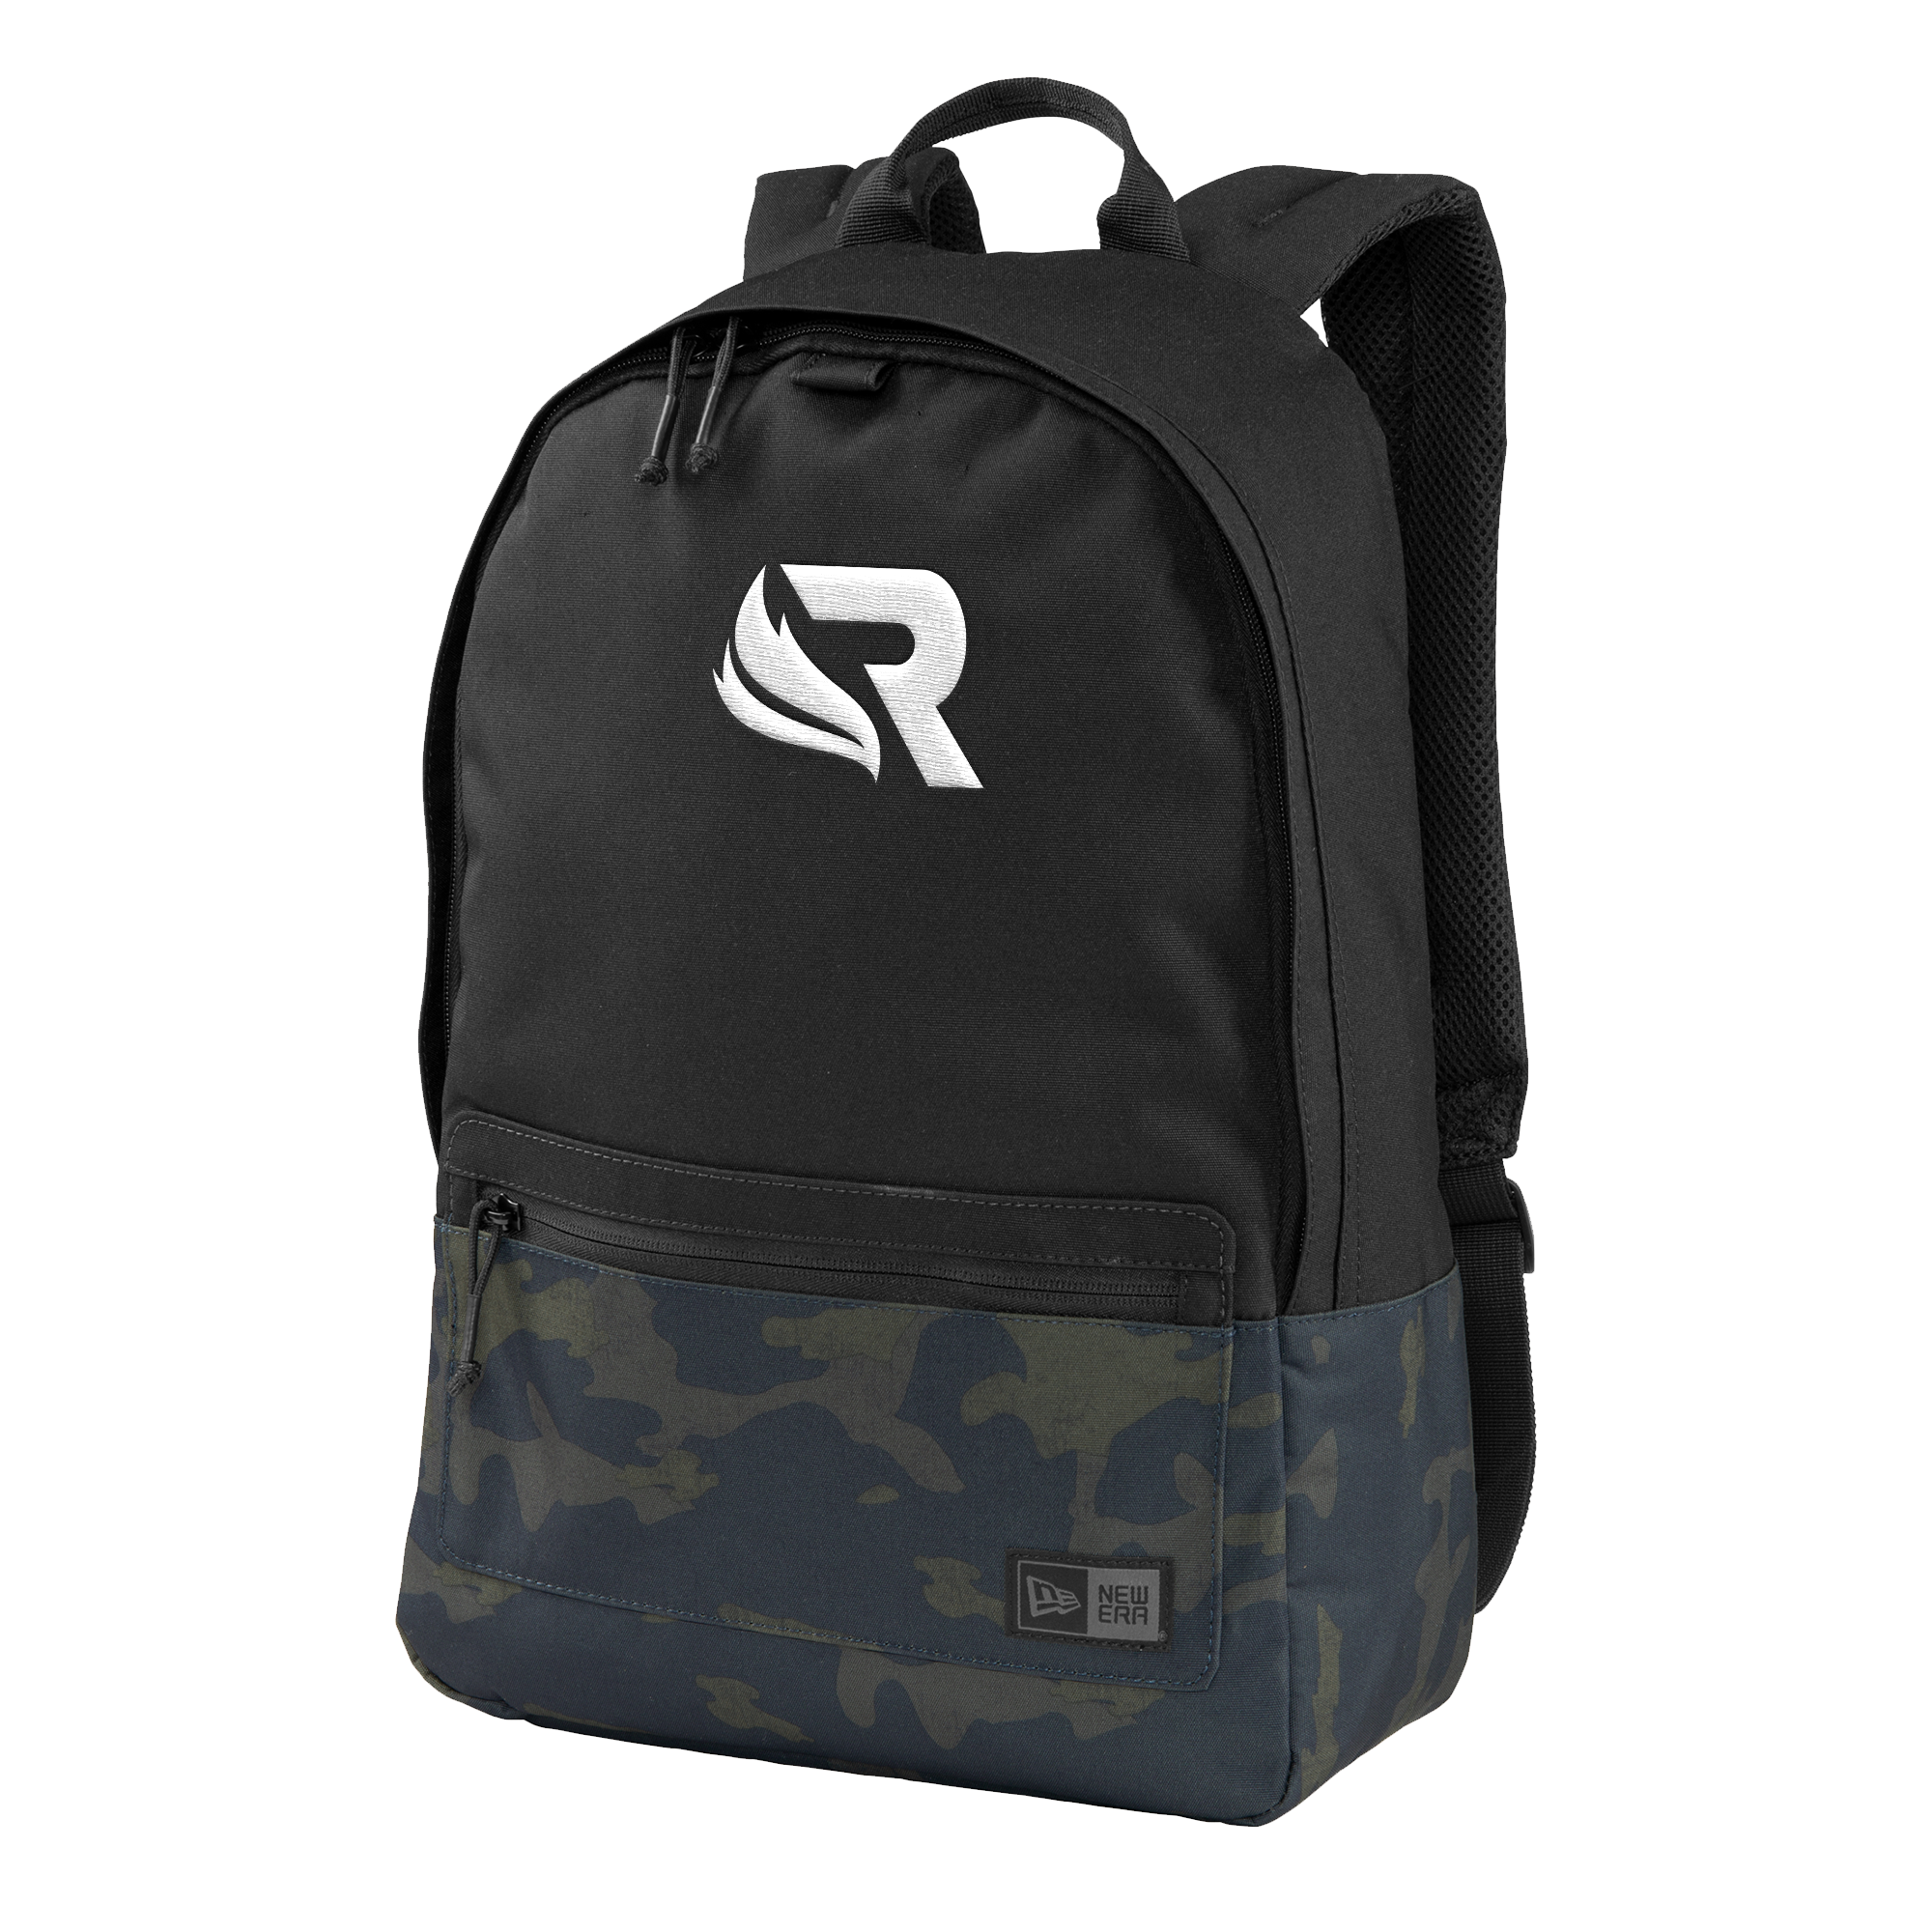 Revival Rev 3 New Era Backpack